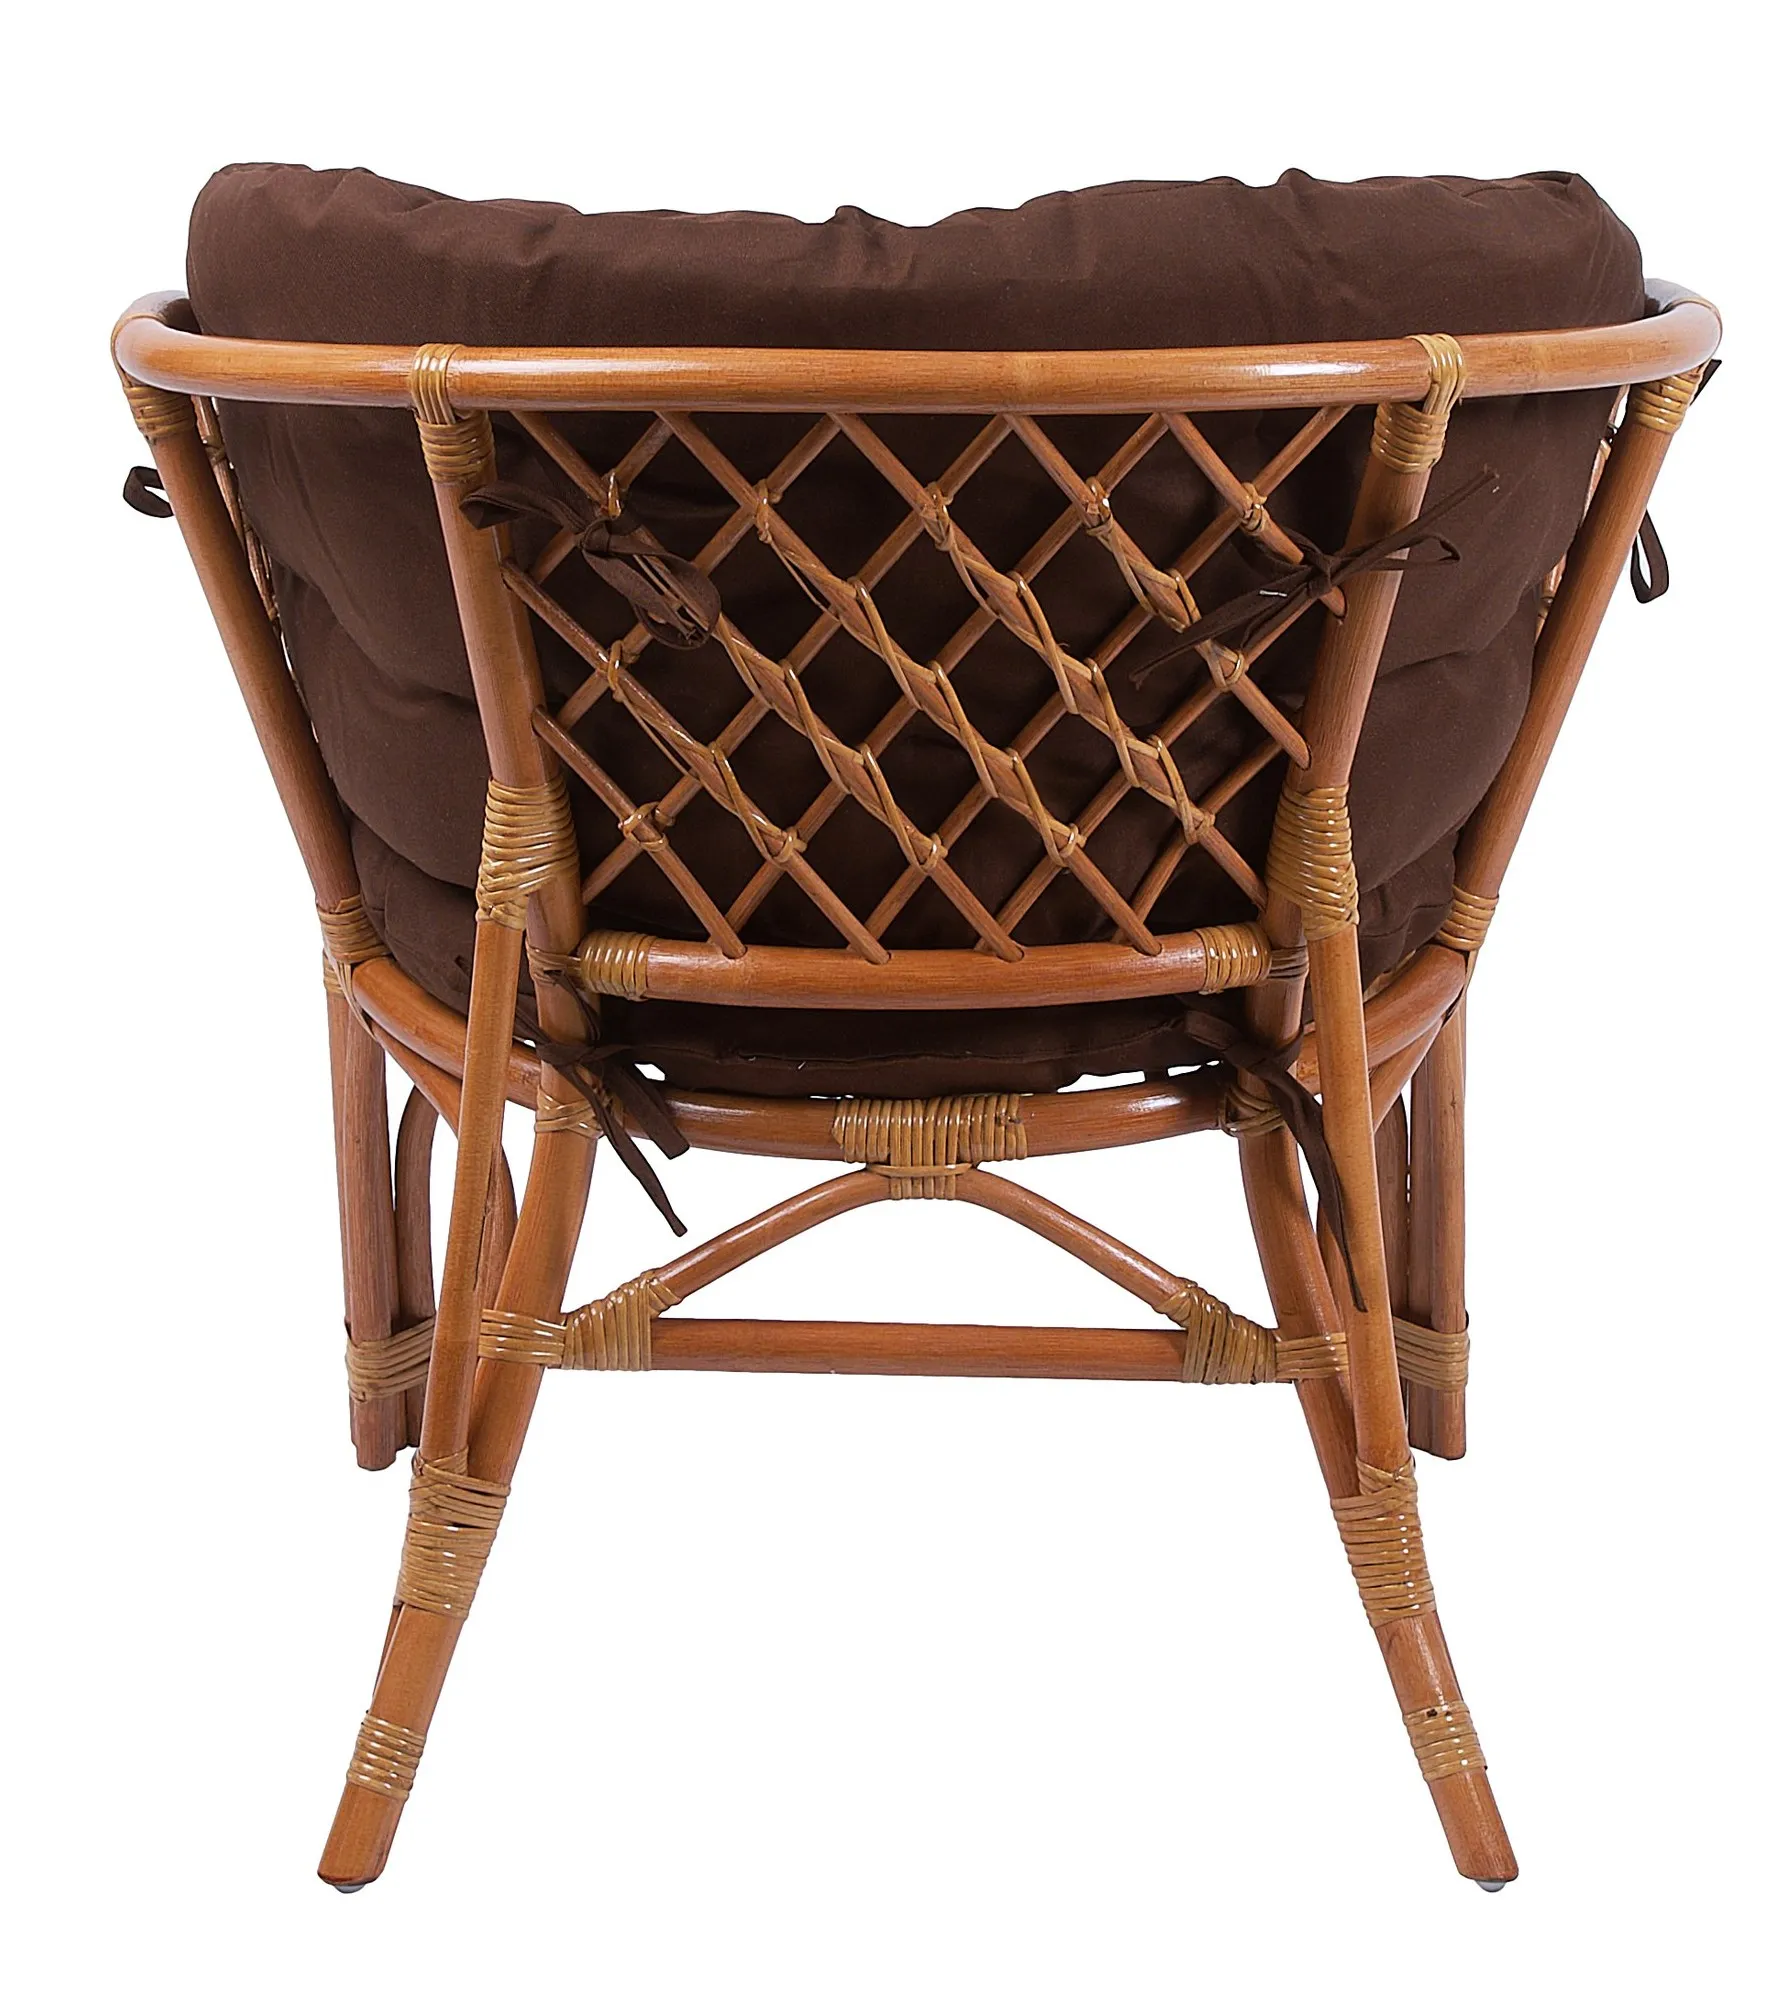 Комплект мебели из ротанга Багама дуэт с овальным столом коньяк (подушки твил полные коричневые)